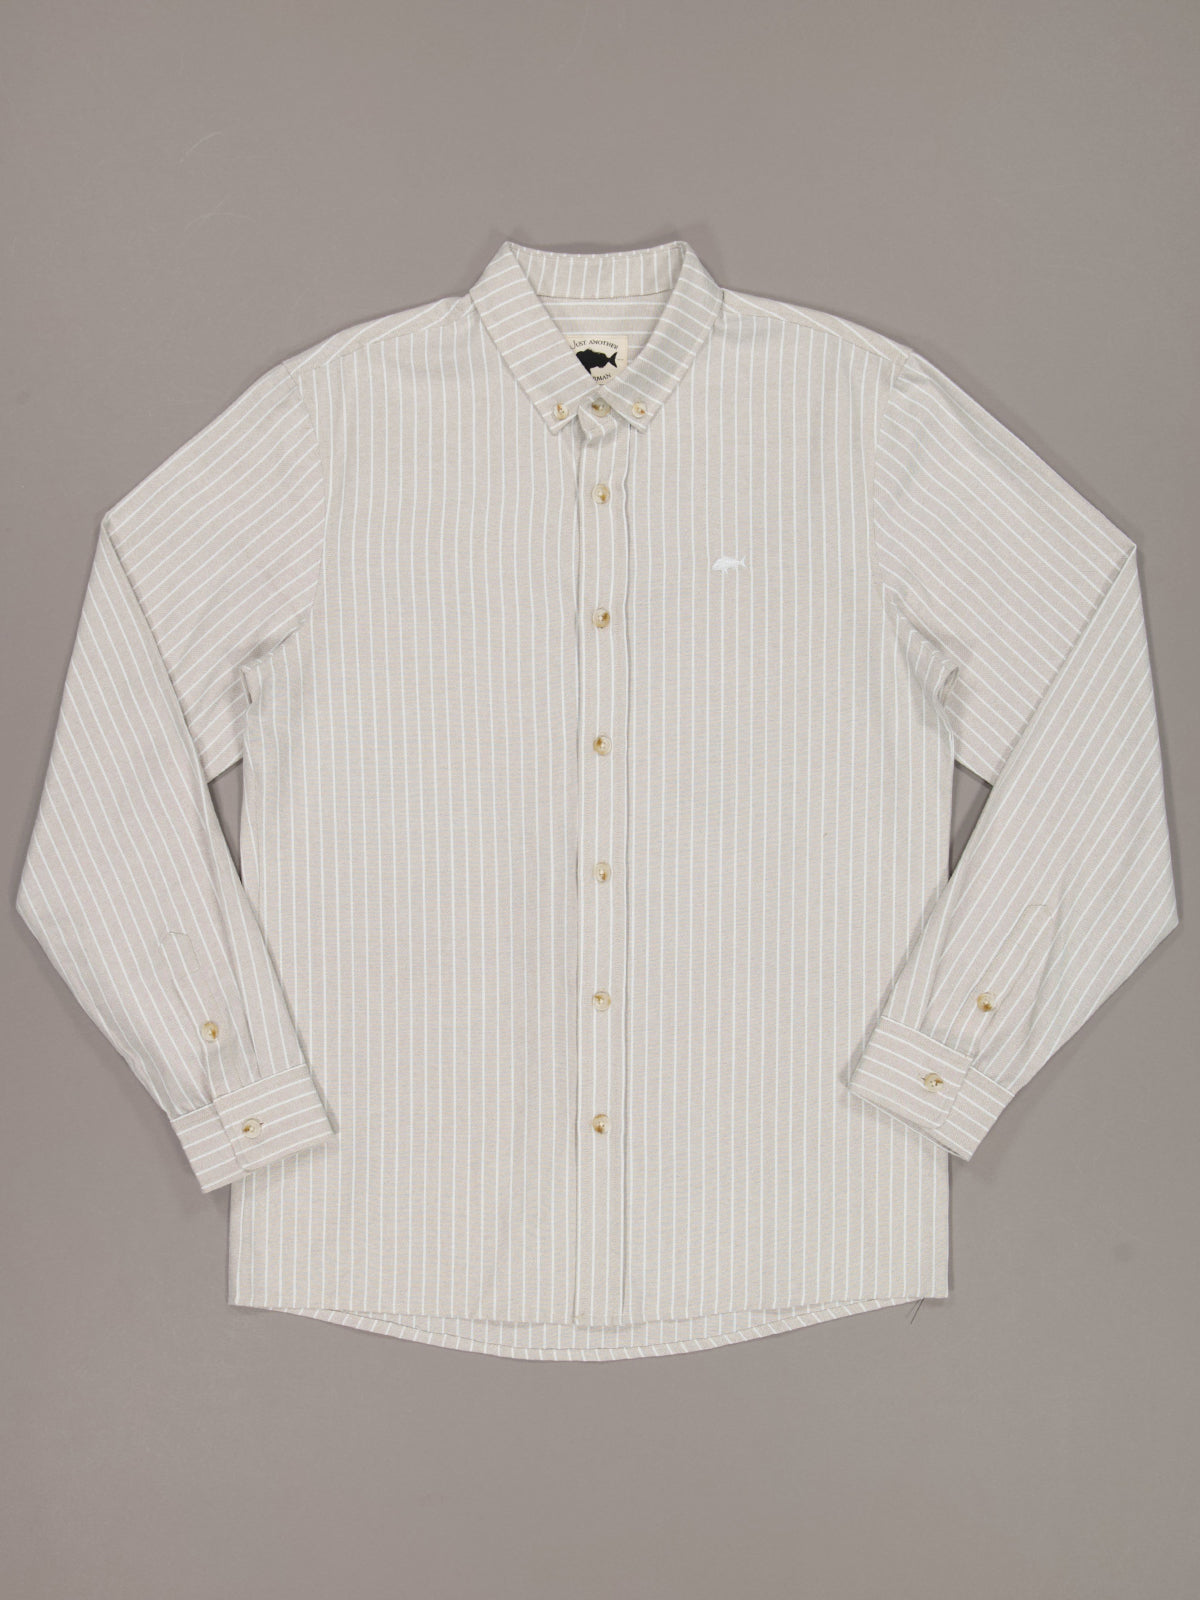 JAF // Seaway Stripe Shirt BROWN/WHITE